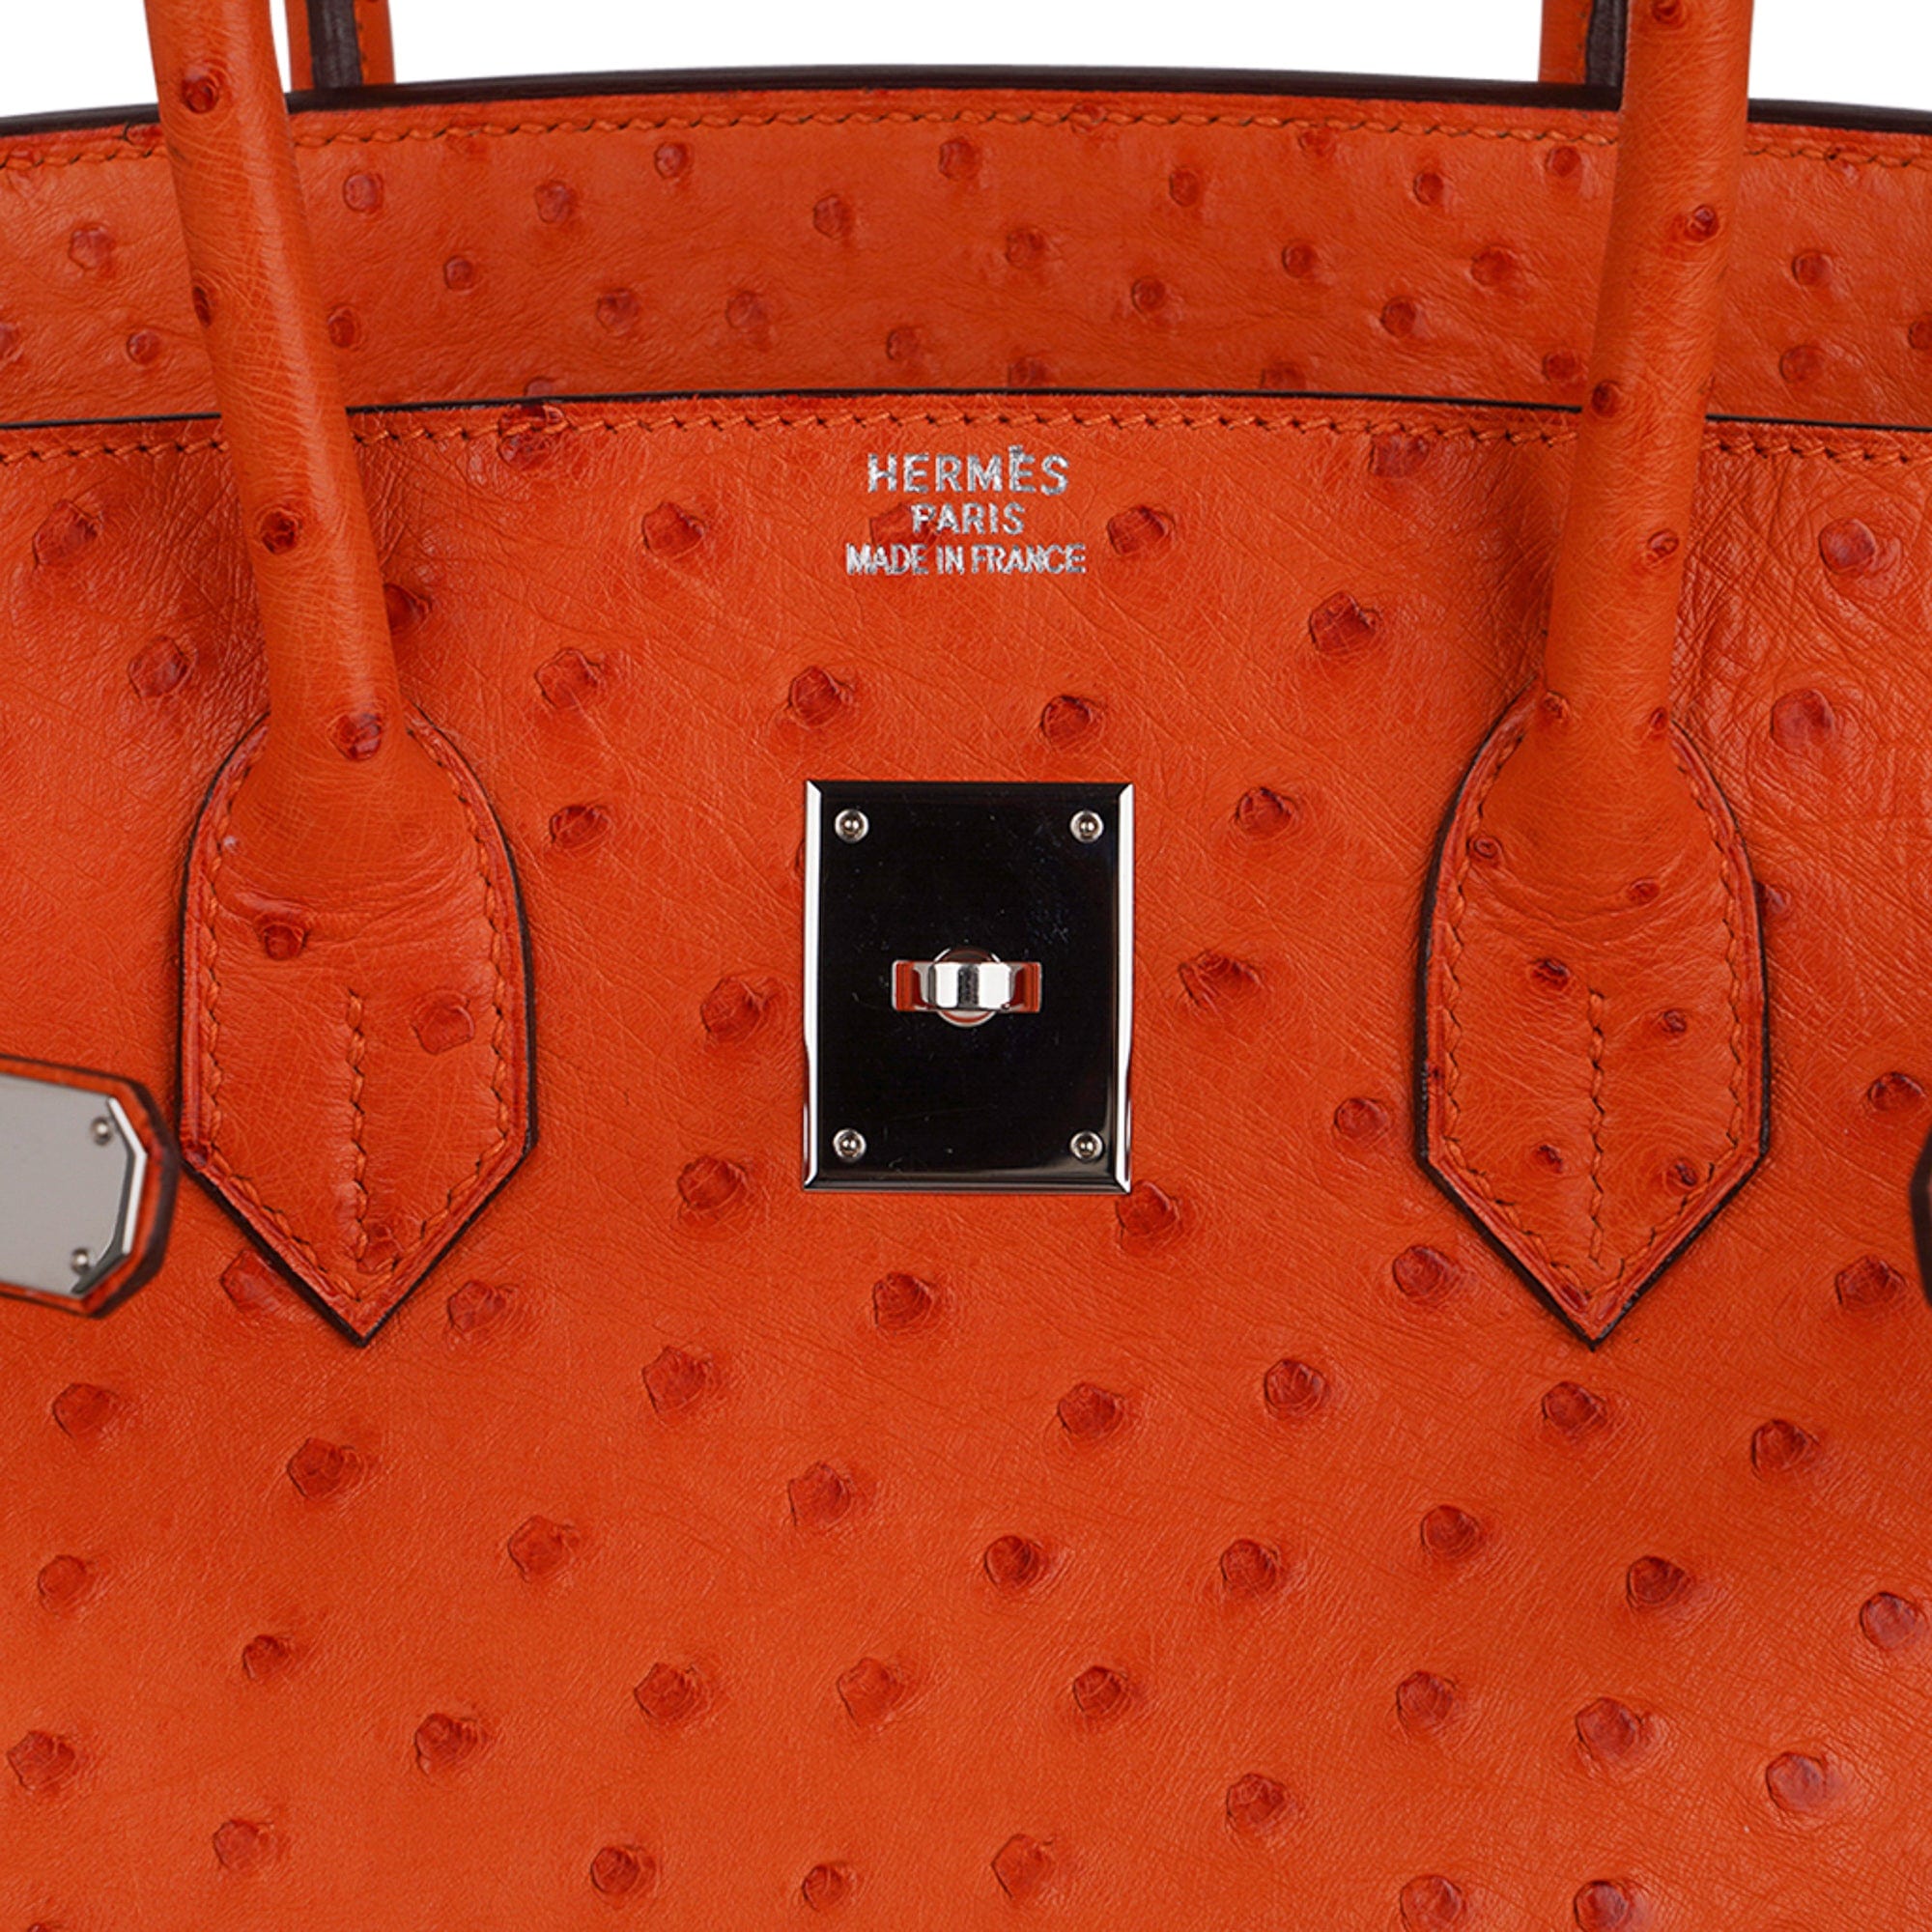 Hermes Birkin 35 Bag Tangerine Ostrich Palladium Hardware Rare – Mightychic